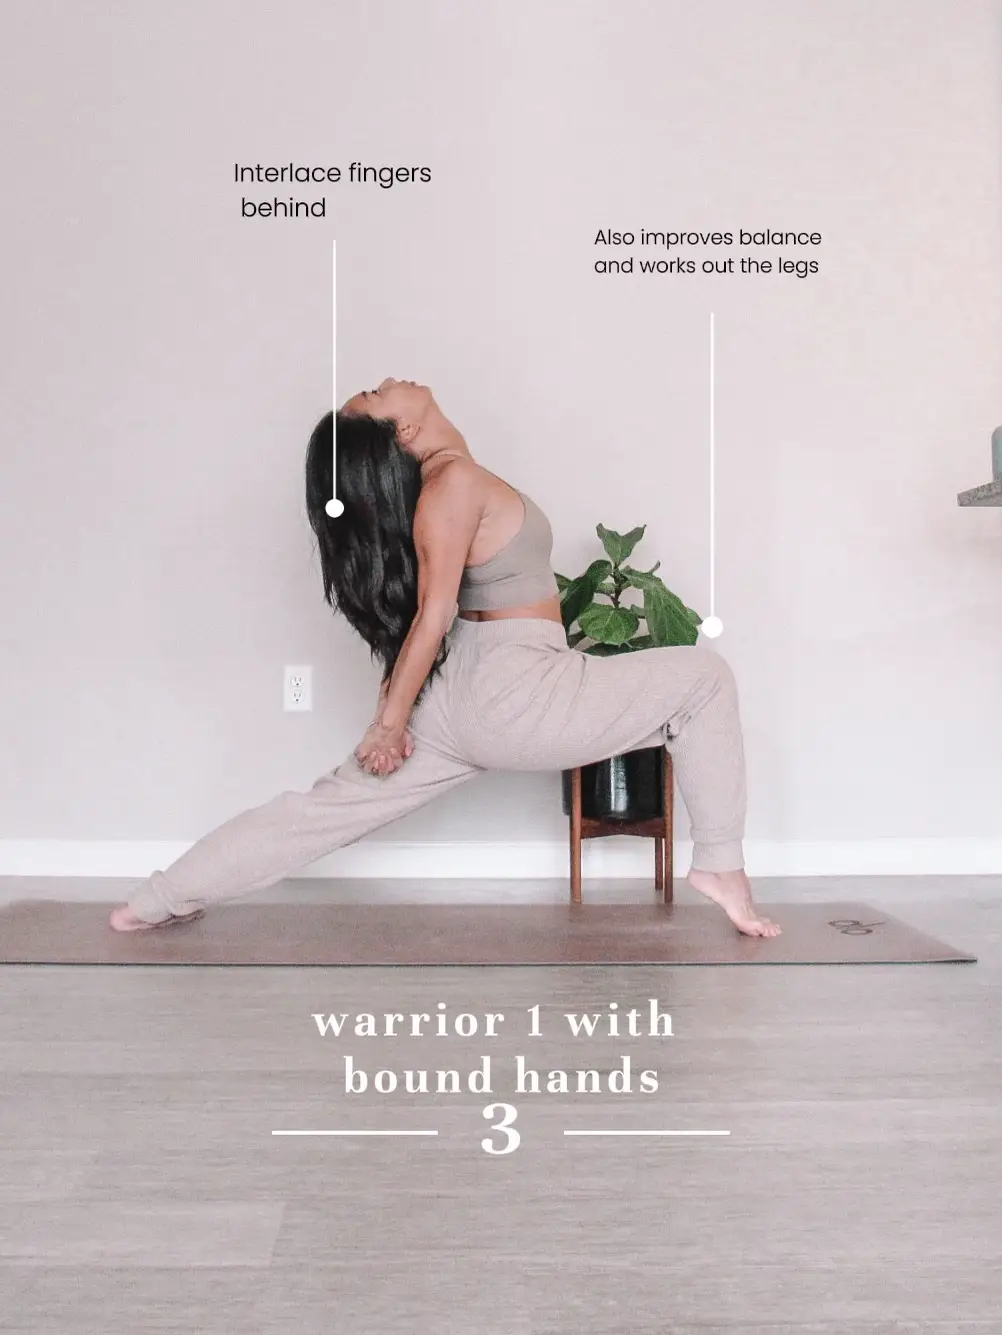 Shoulder Stretch Hands Behind Back Interlaced Fingers Yoga